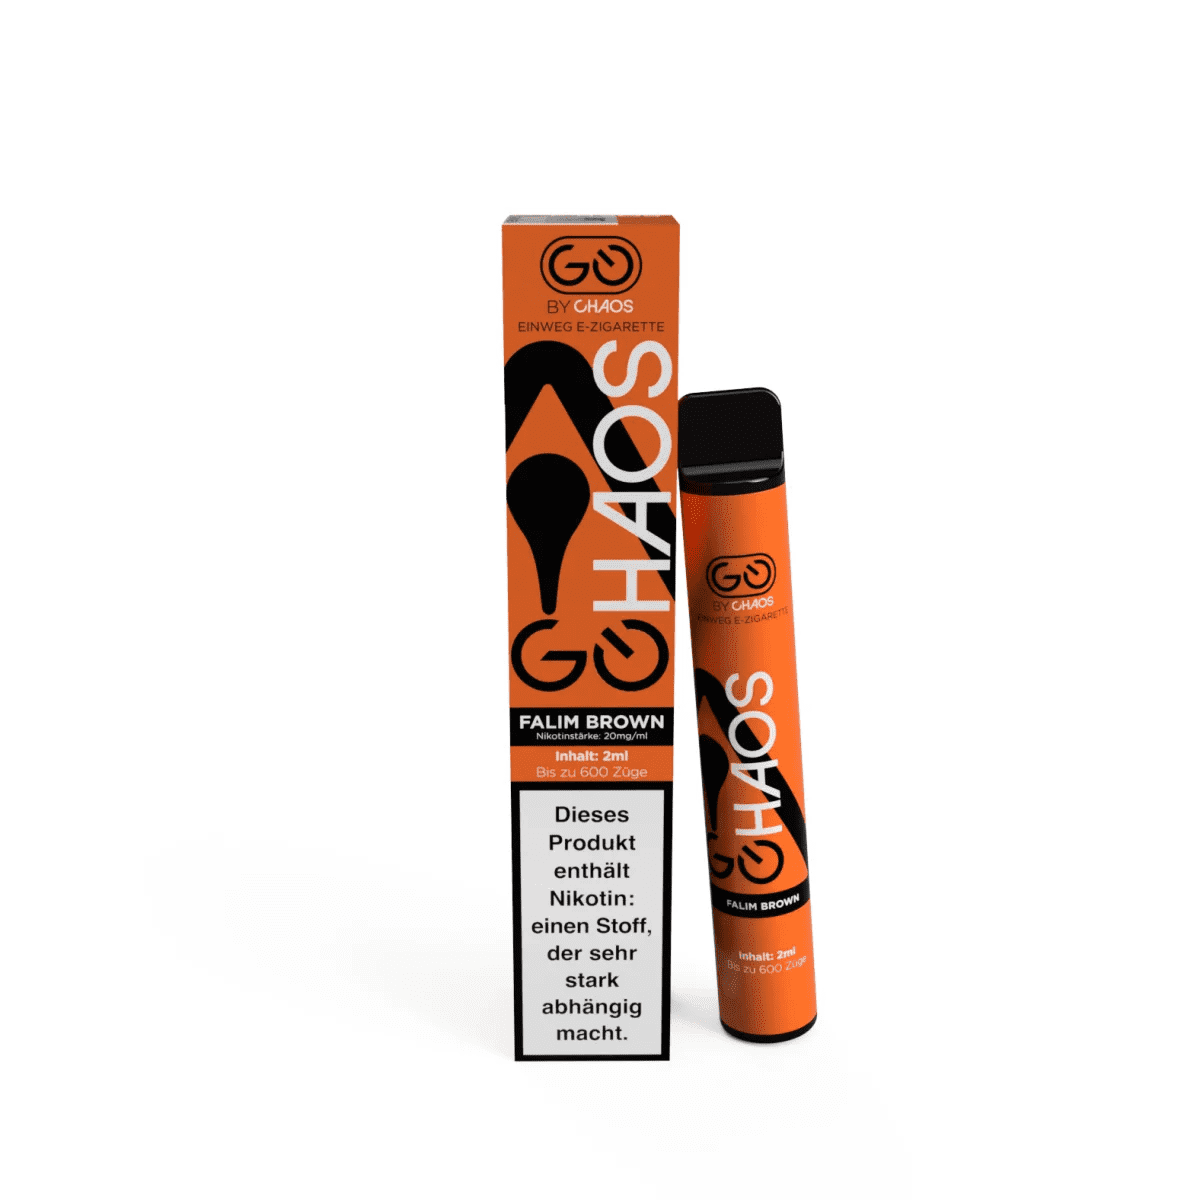 Chaos 600 - Einweg E-Zigarette - Falim Brown 2% Nikotin